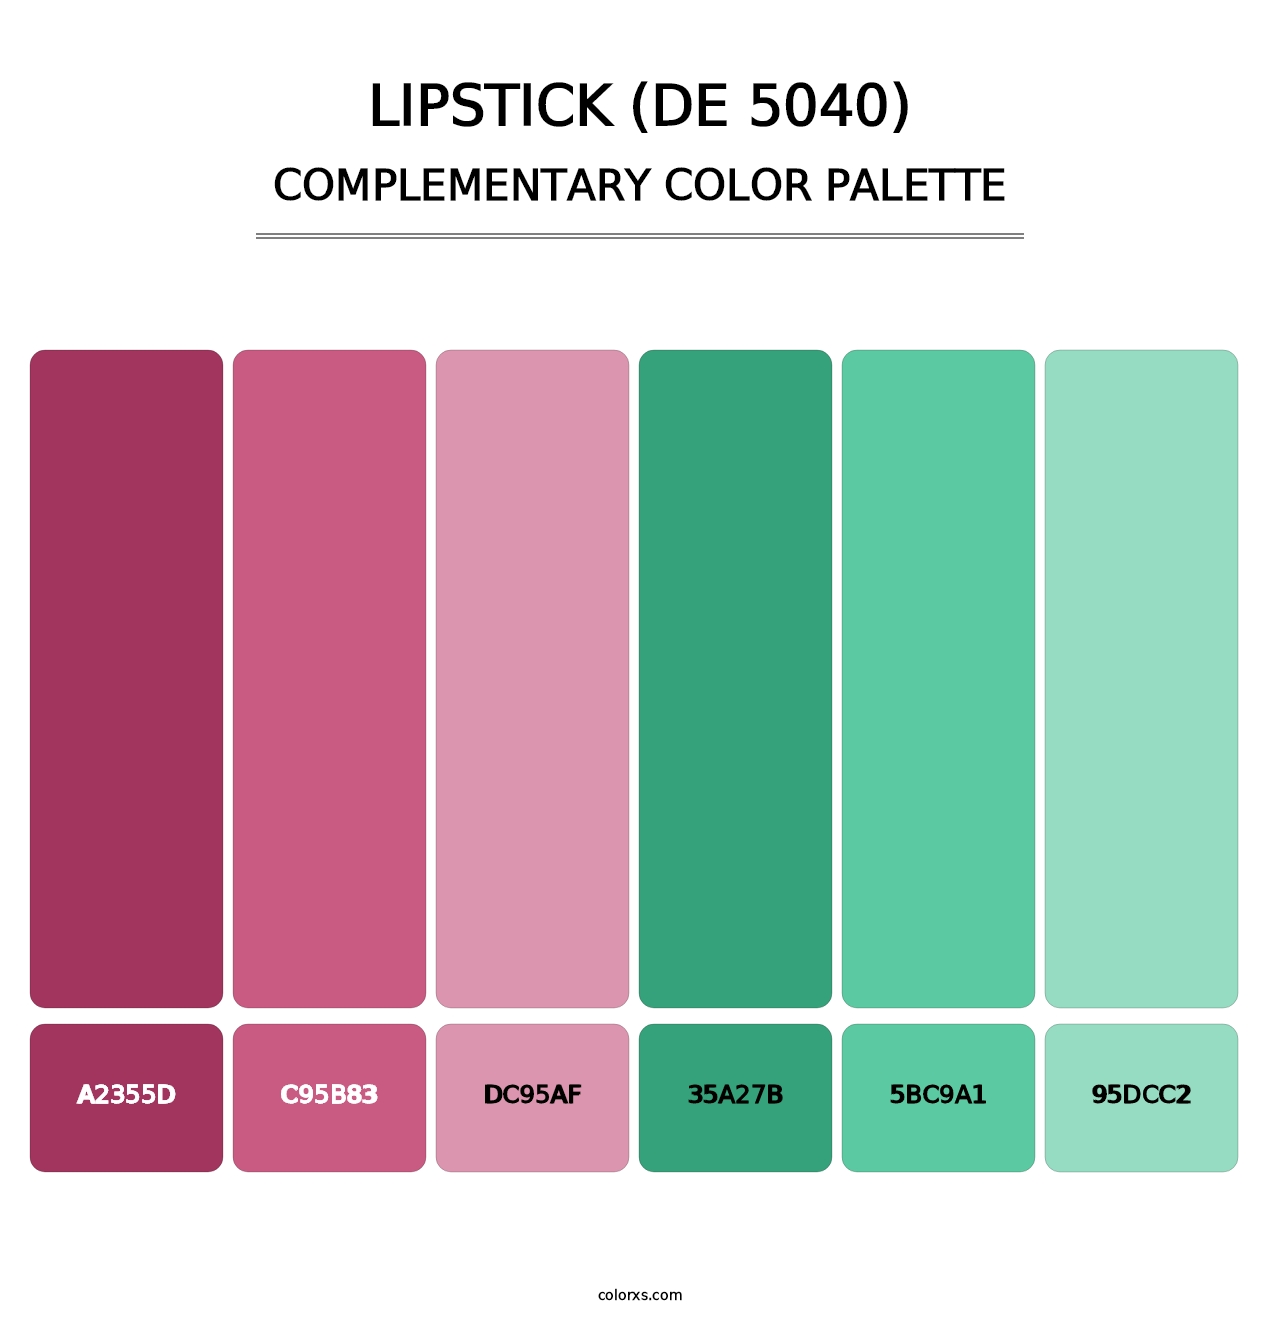 Lipstick (DE 5040) - Complementary Color Palette